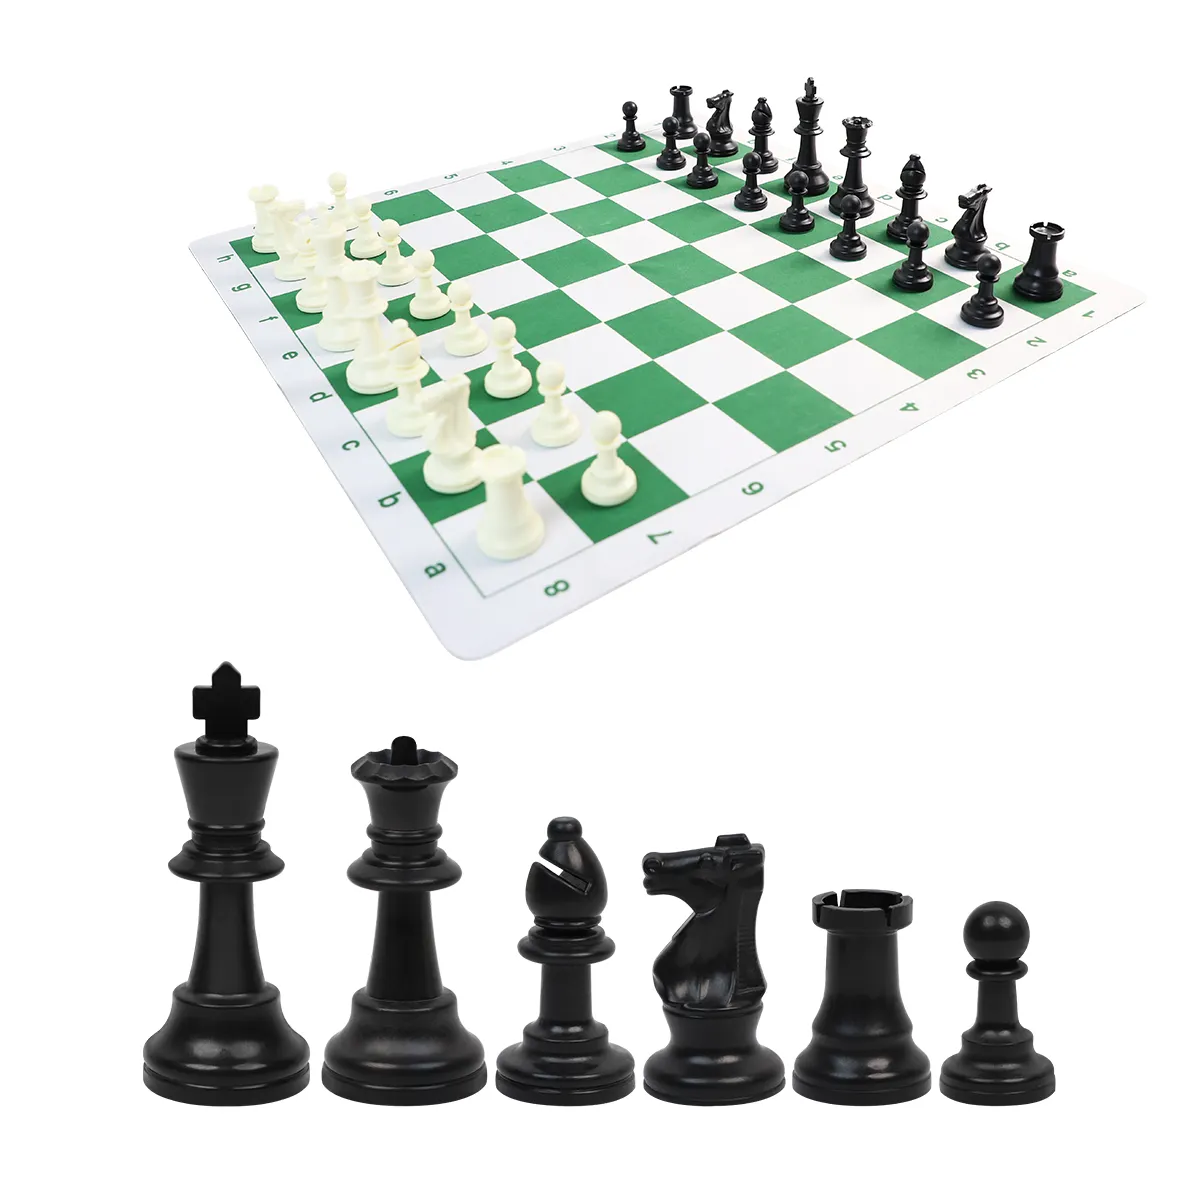 공장 직접 판매 체스 세트 토너먼트 표준 클럽 체스 조각 20 "x 20" 2-1/4 "사각형 체스 보드